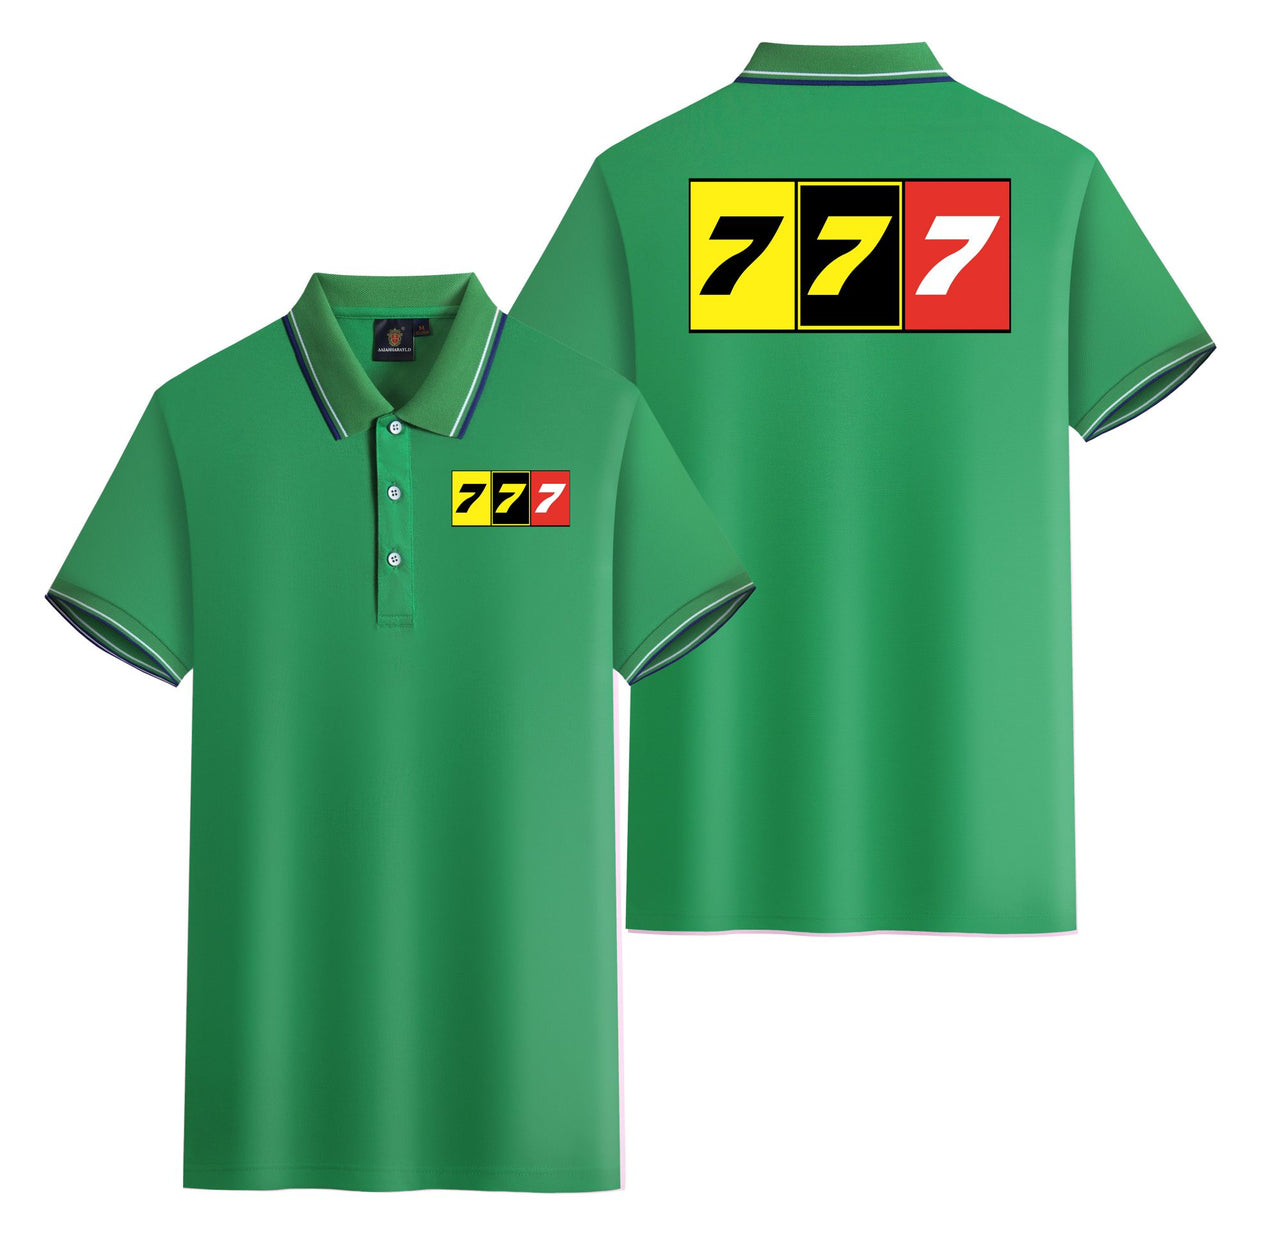 Flat Colourful 777 Designed Stylish Polo T-Shirts (Double-Side)